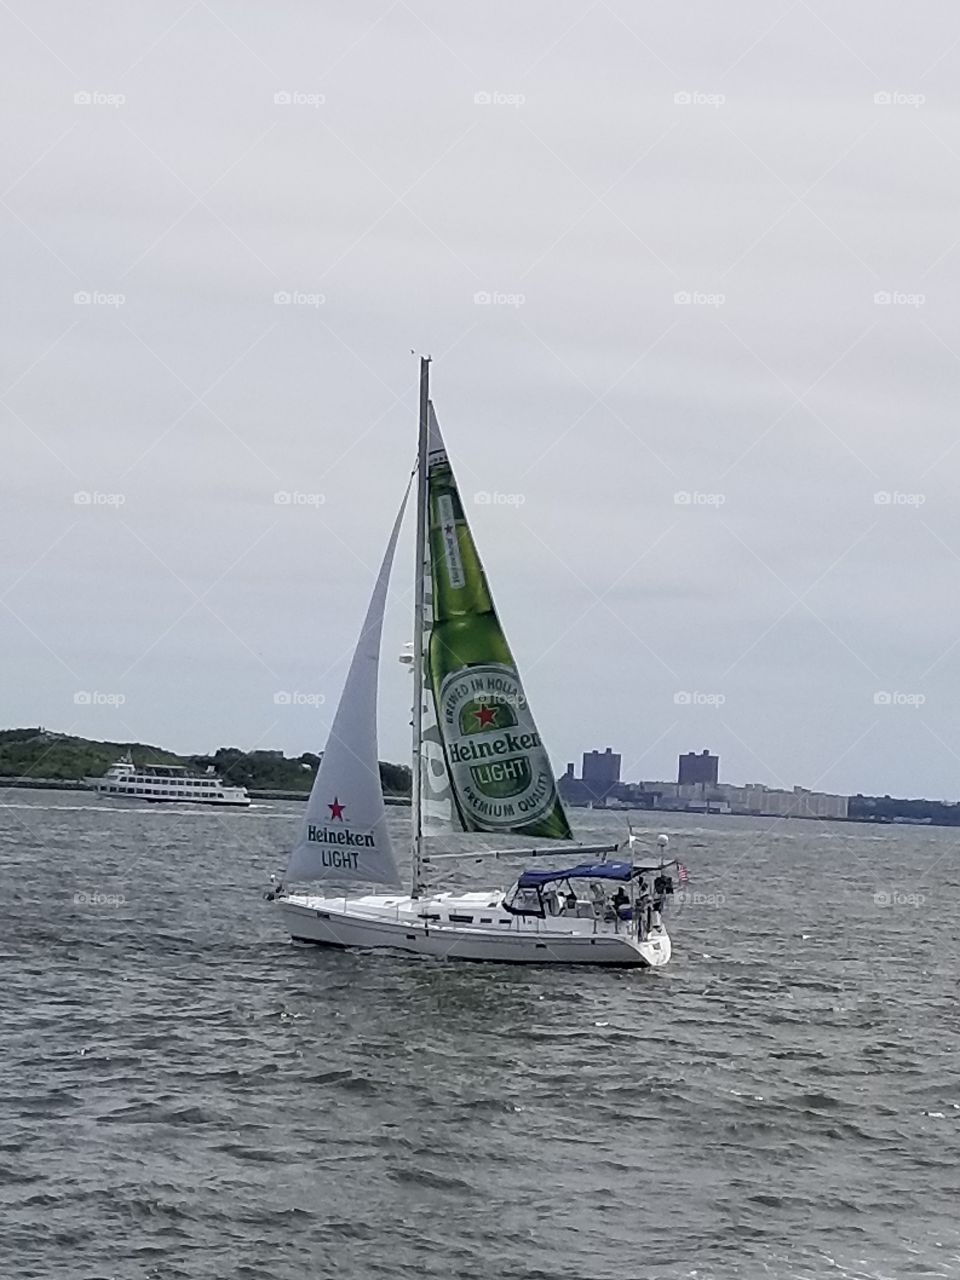 Heineken sail boat